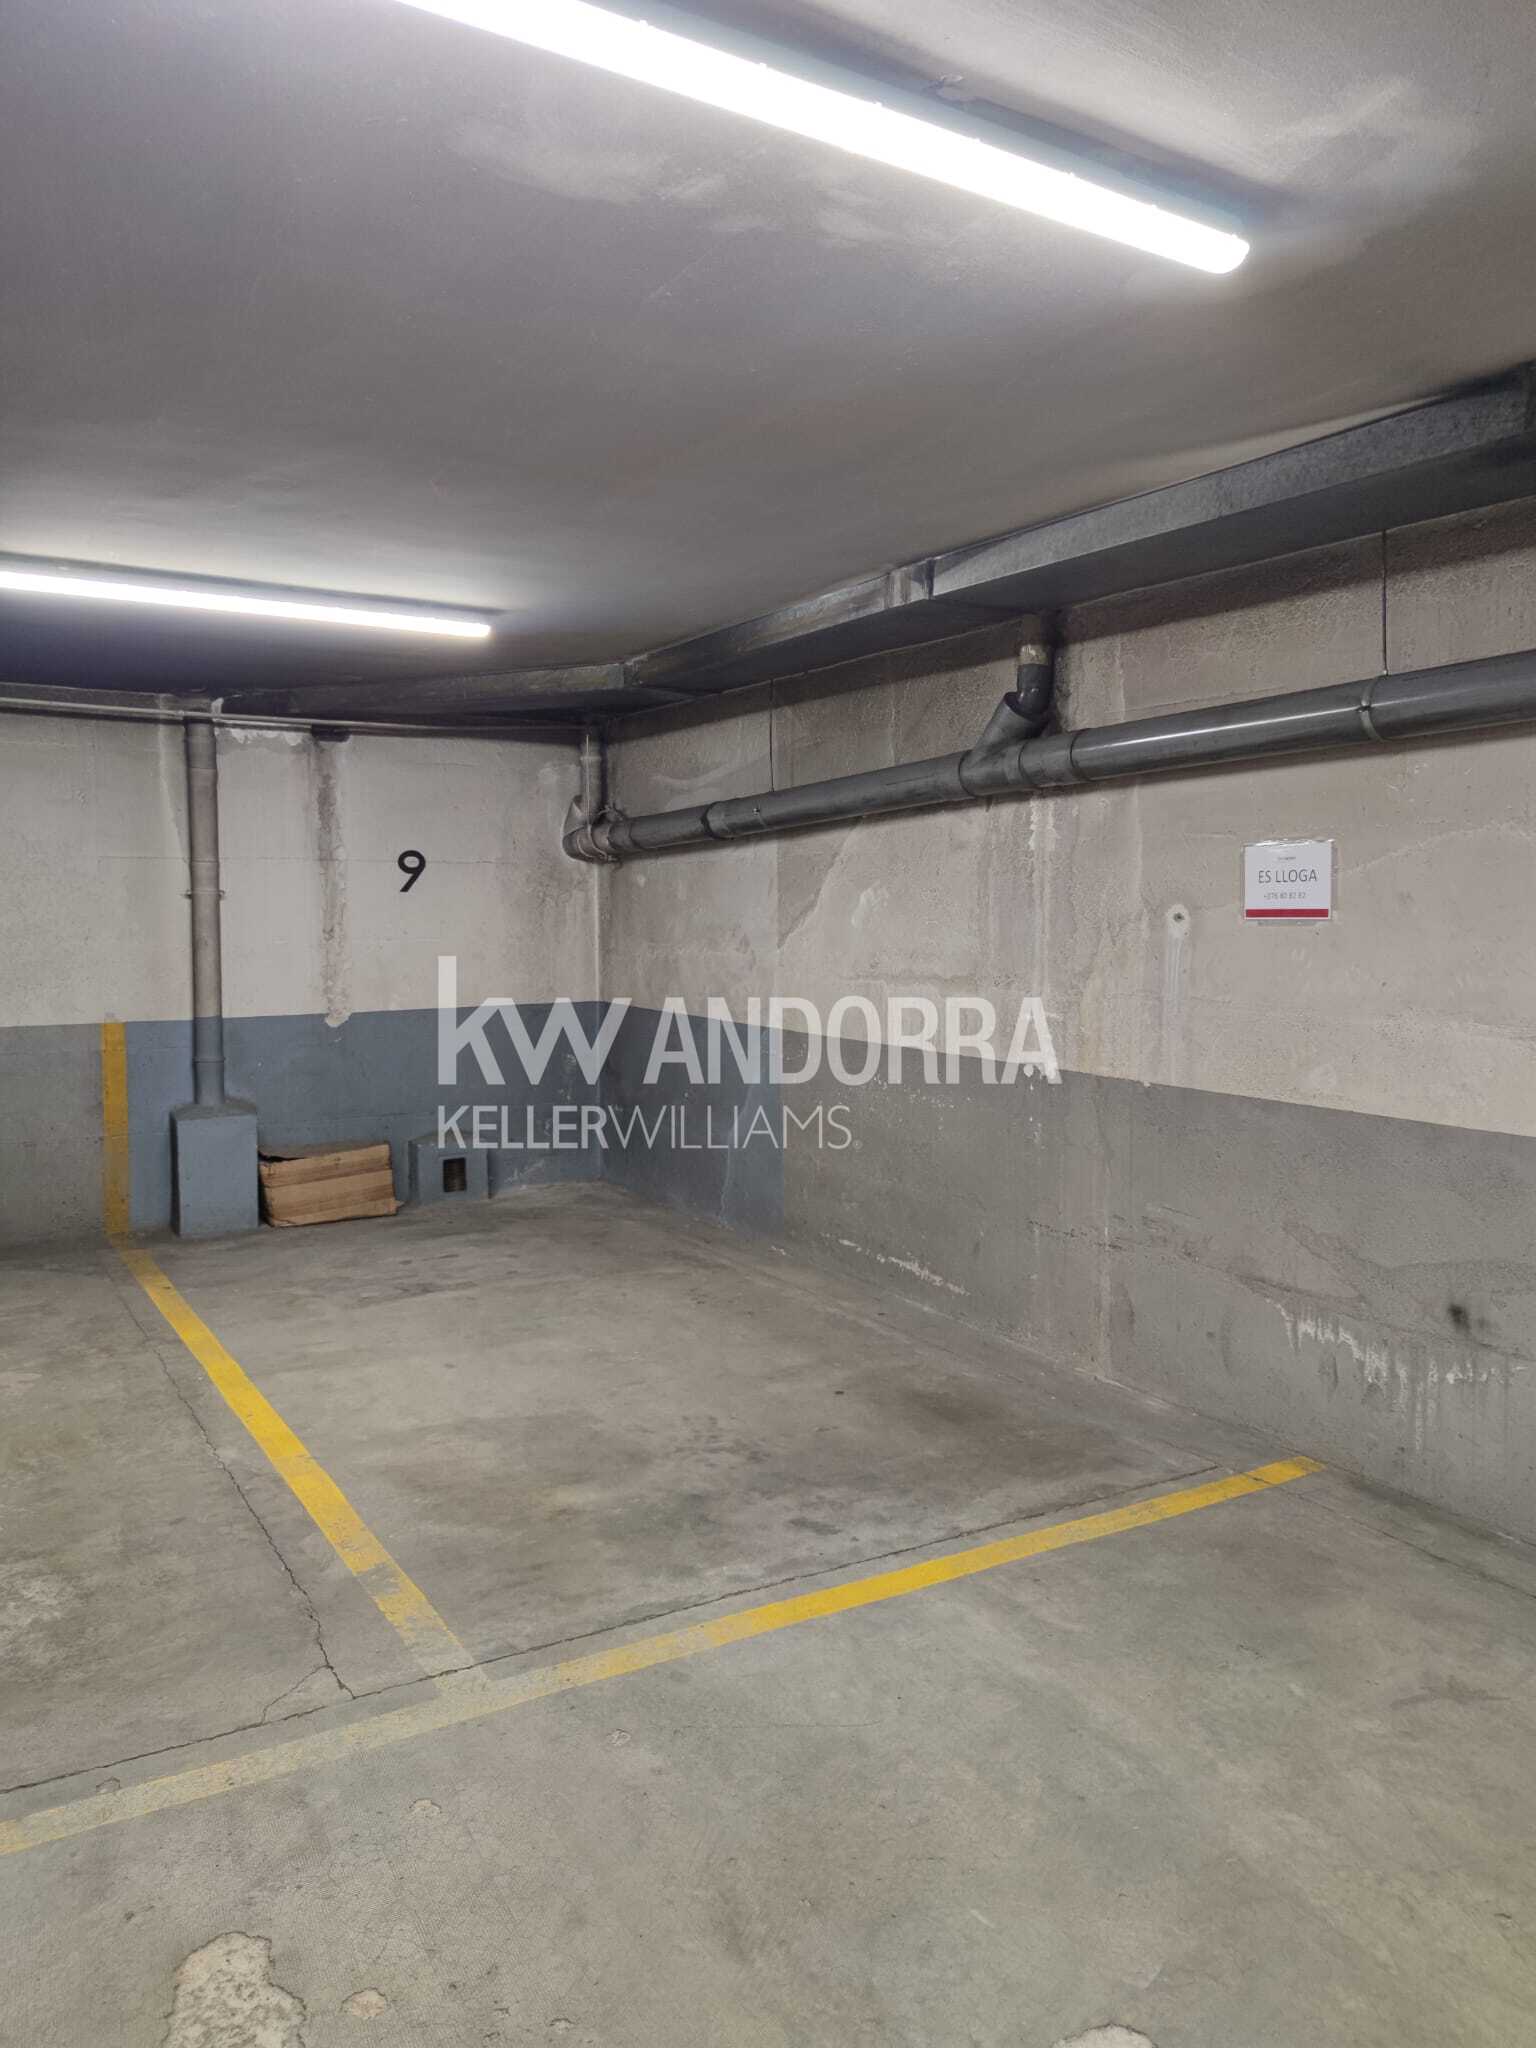 Garatge de lloguer a Escaldes Engordany, 16 metres